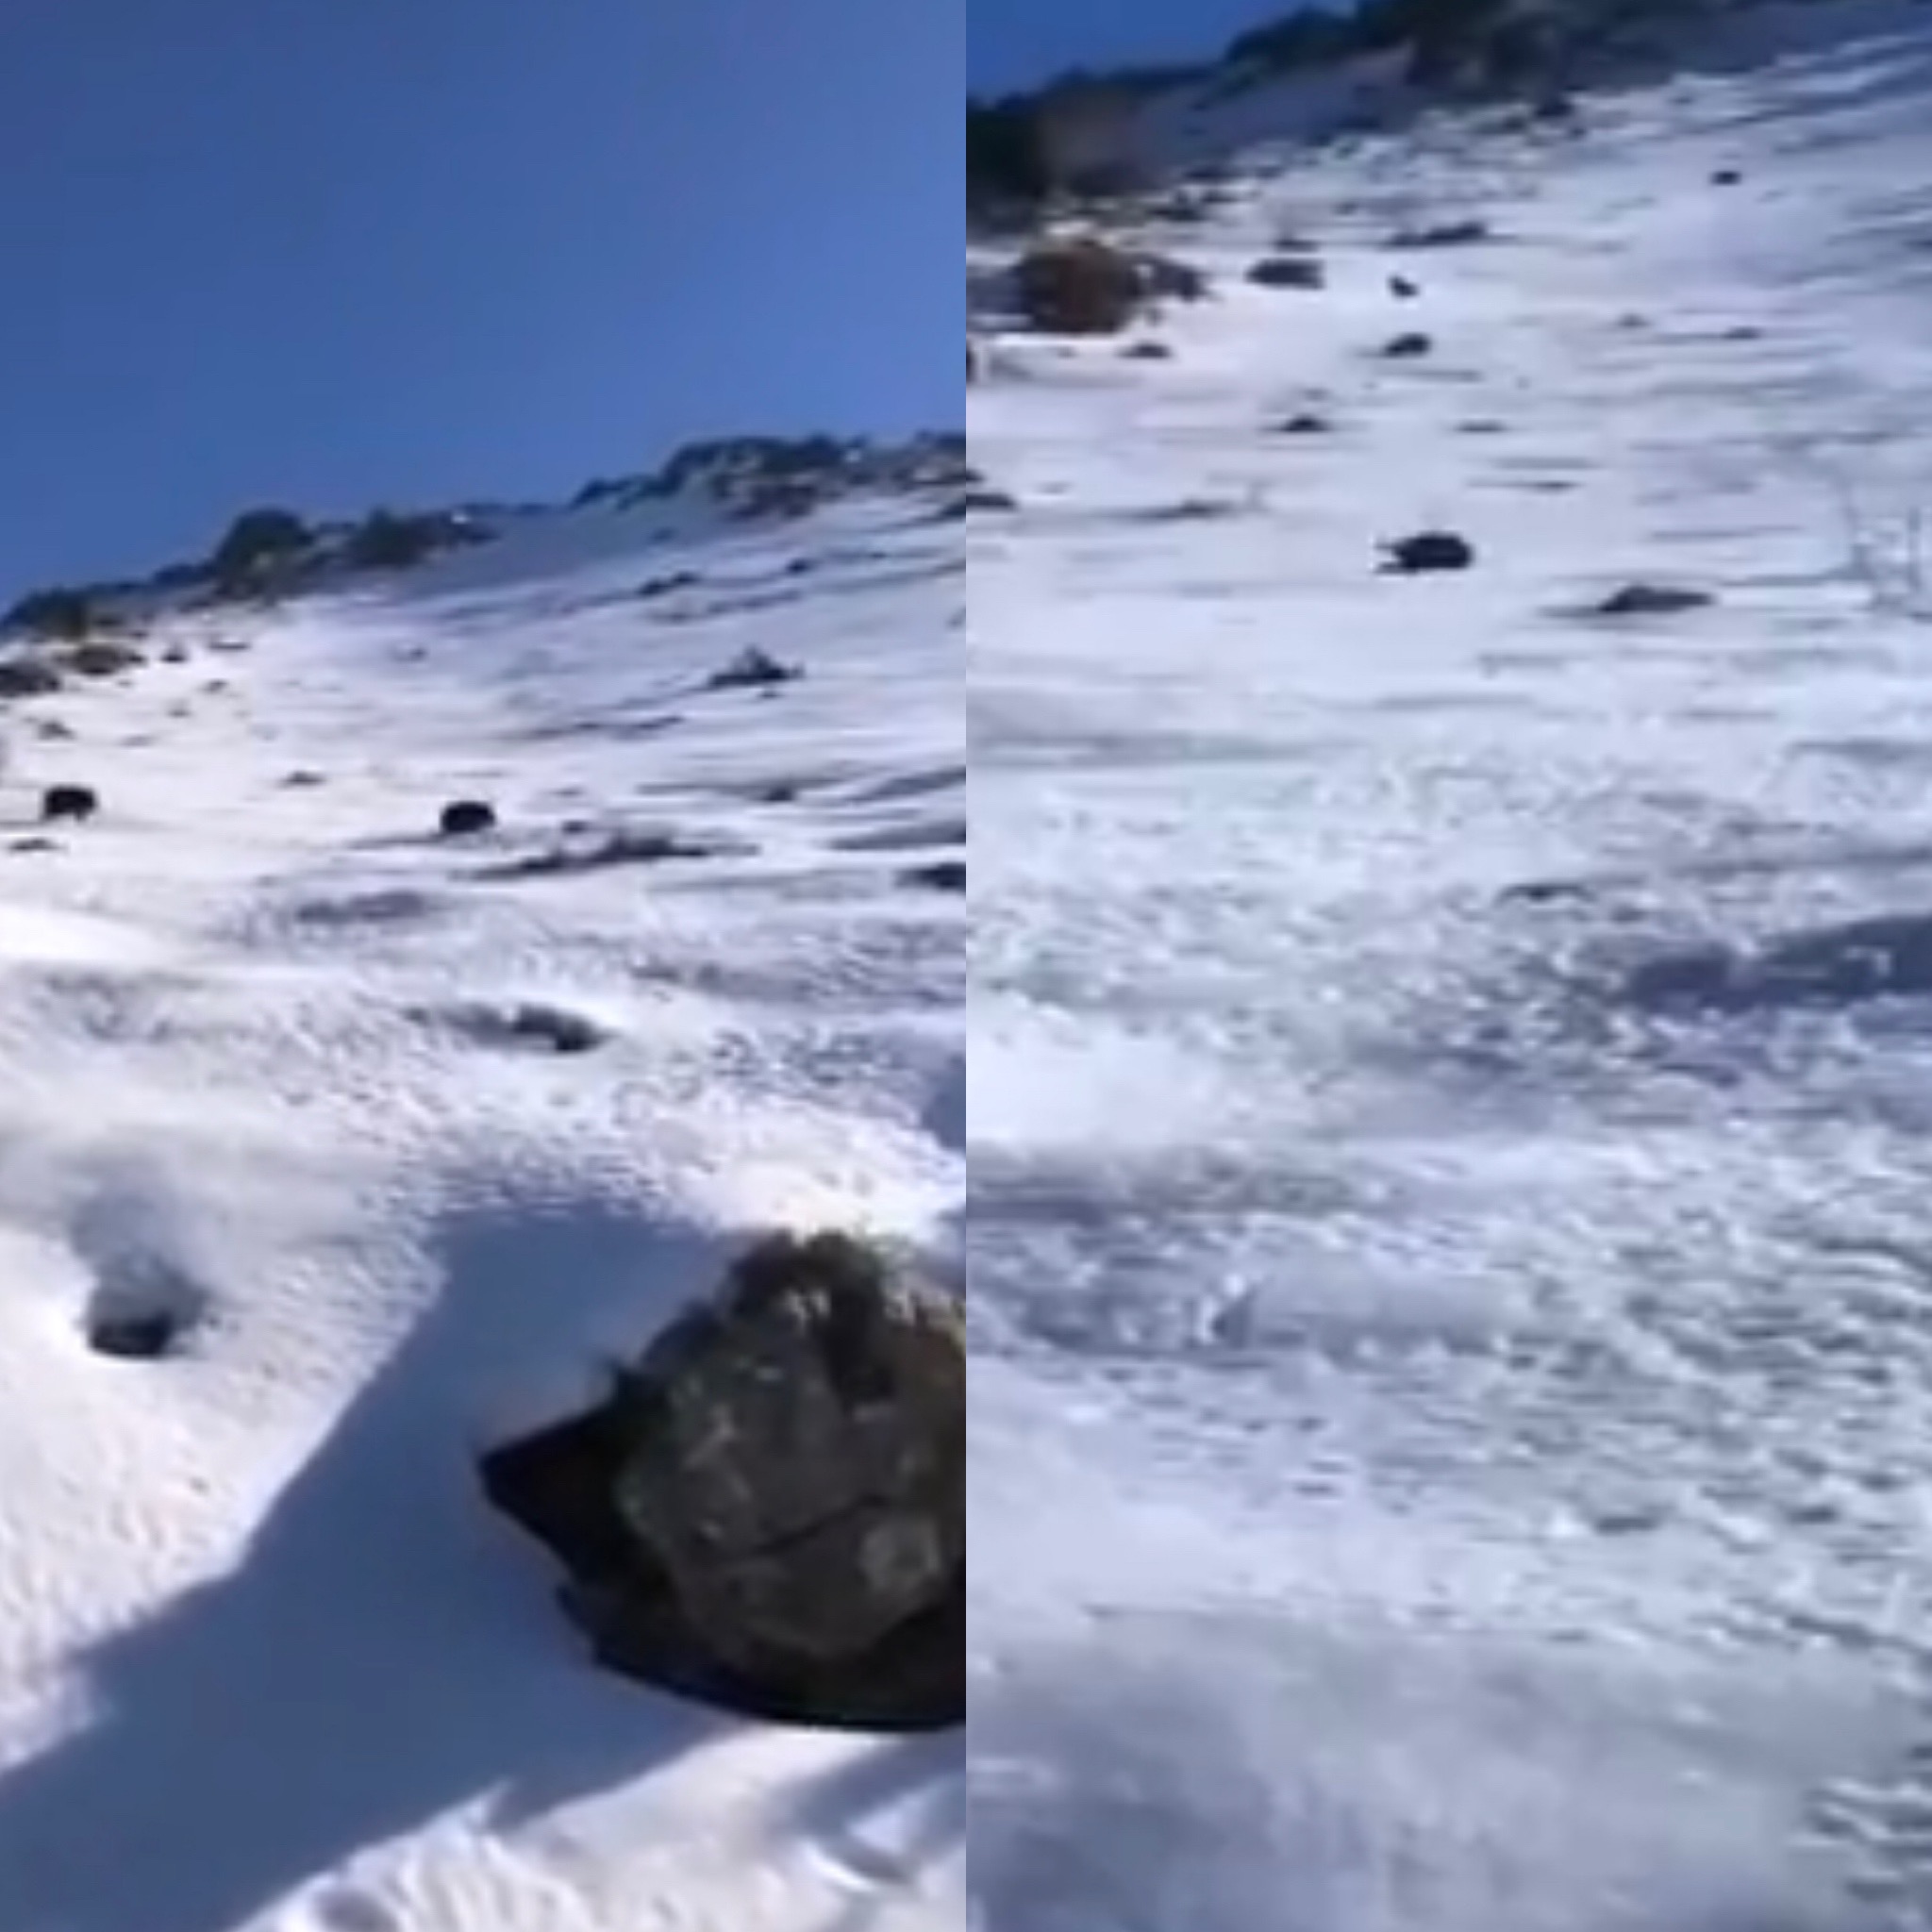 VIDEO - "Mi lu, mi lu, il nous arrive droit dessus !" : un sanglier glisse sur la neige et tombe sur deux randonneuses